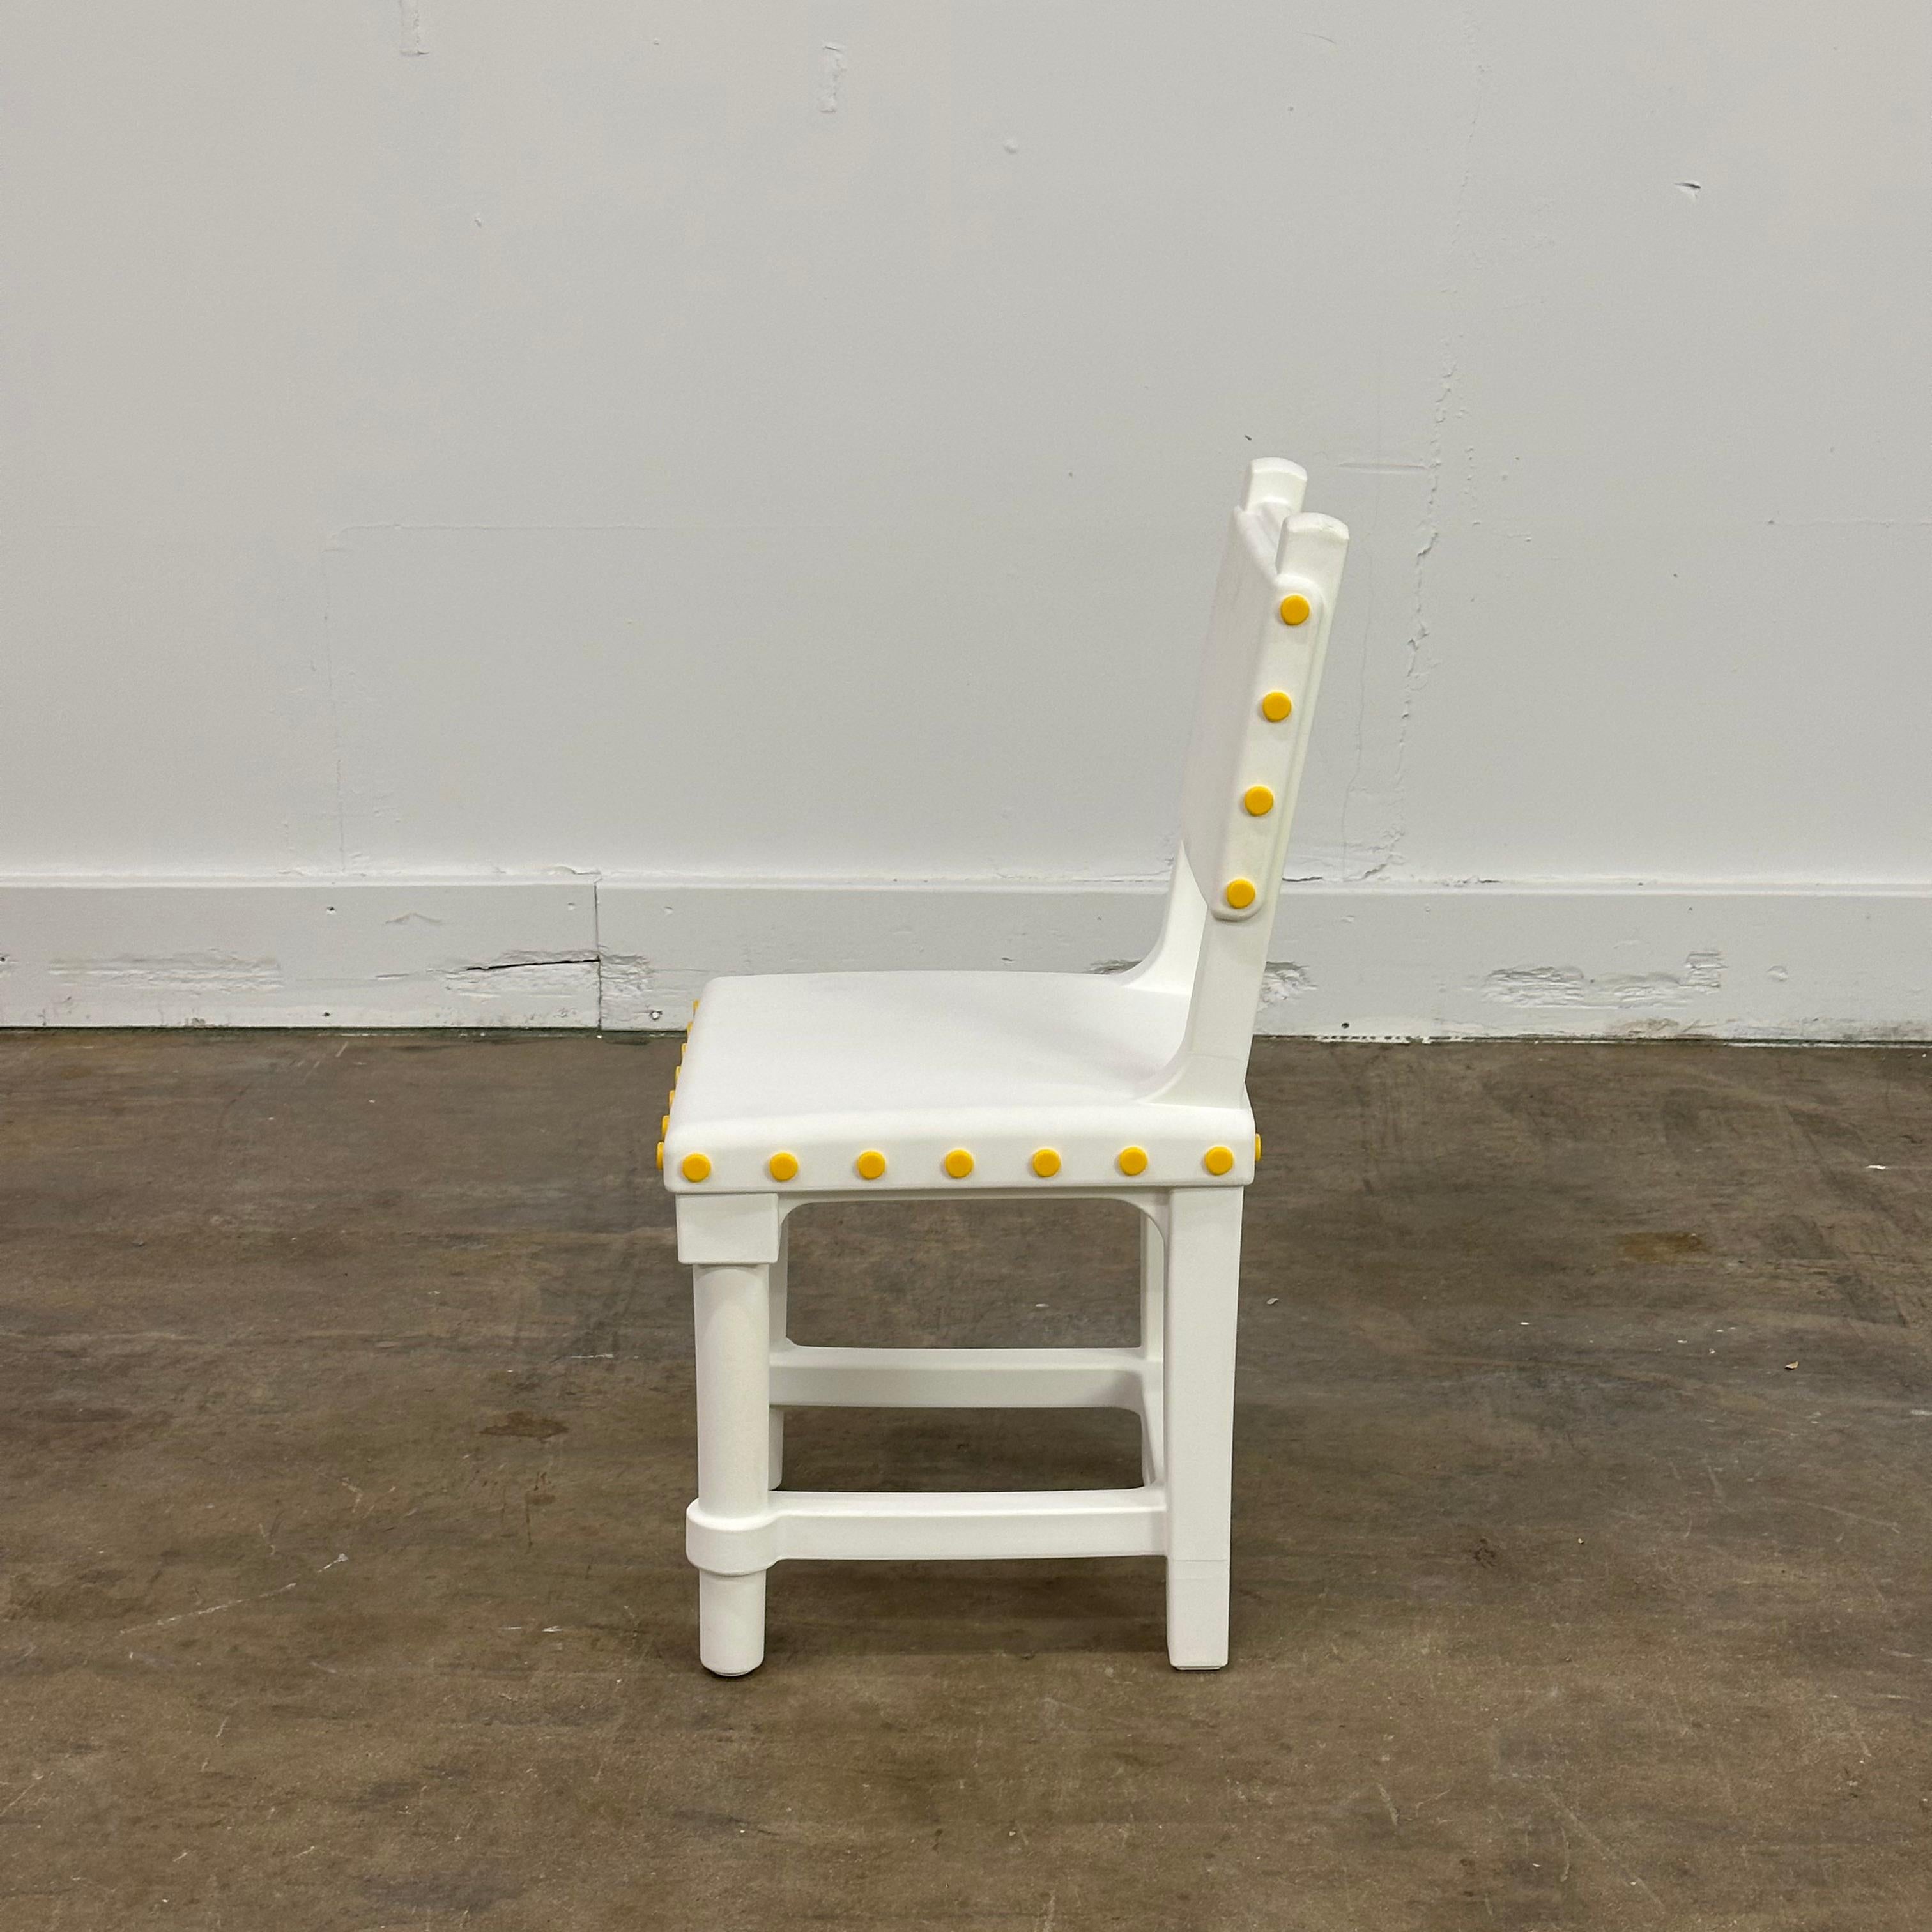 Néerlandais Gothic Chair by Studio Job for Moooi, Netherlands, c.2010s en vente